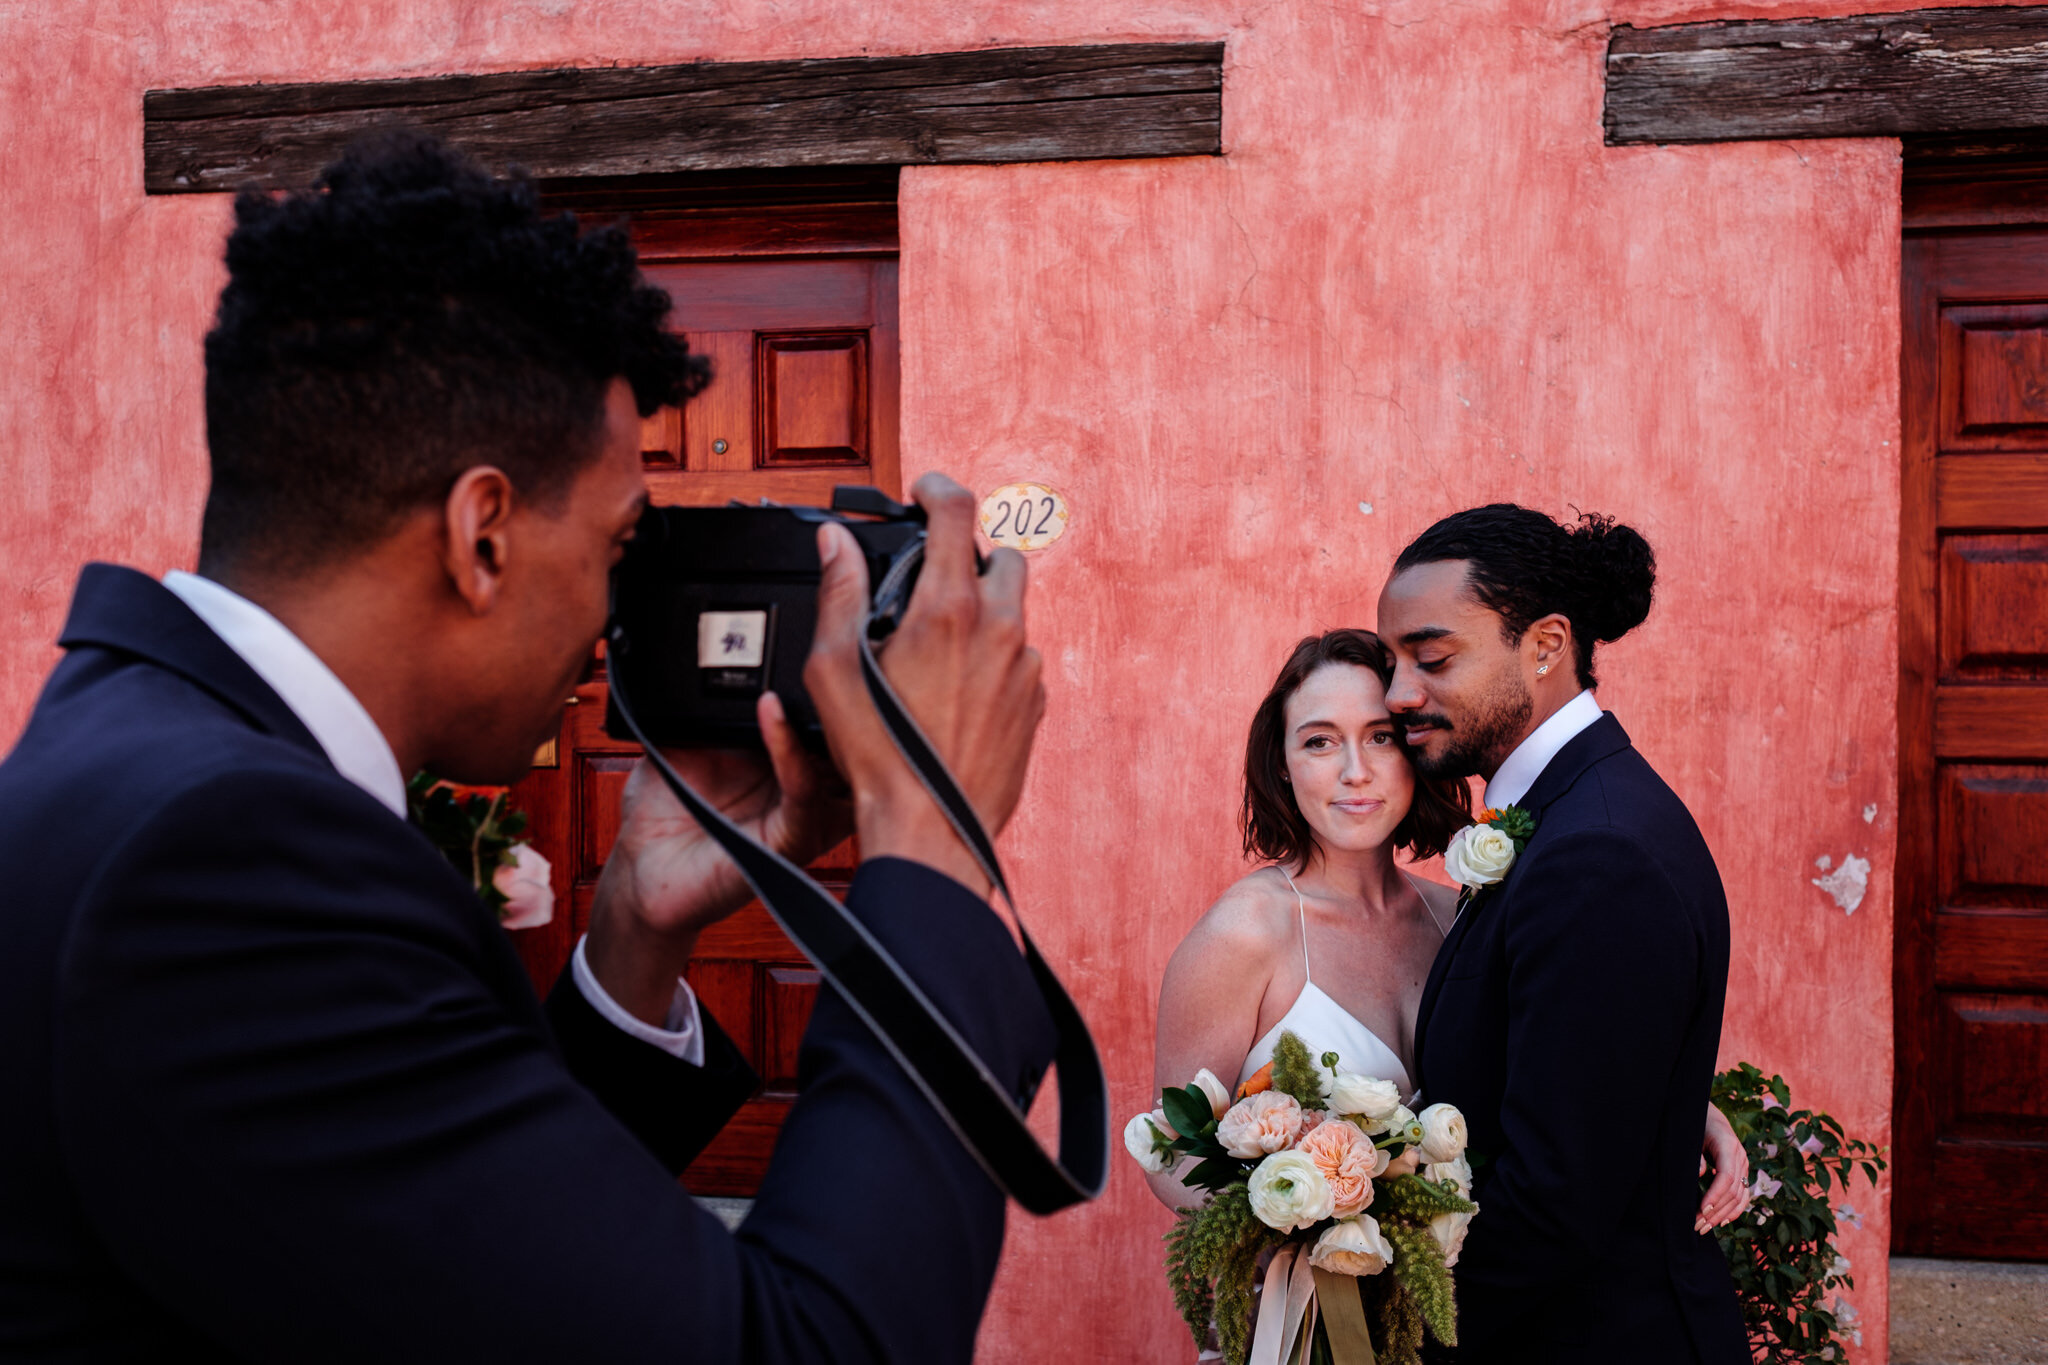 lucca-lazzarini-fotografo-bodas-mexico-8.jpg